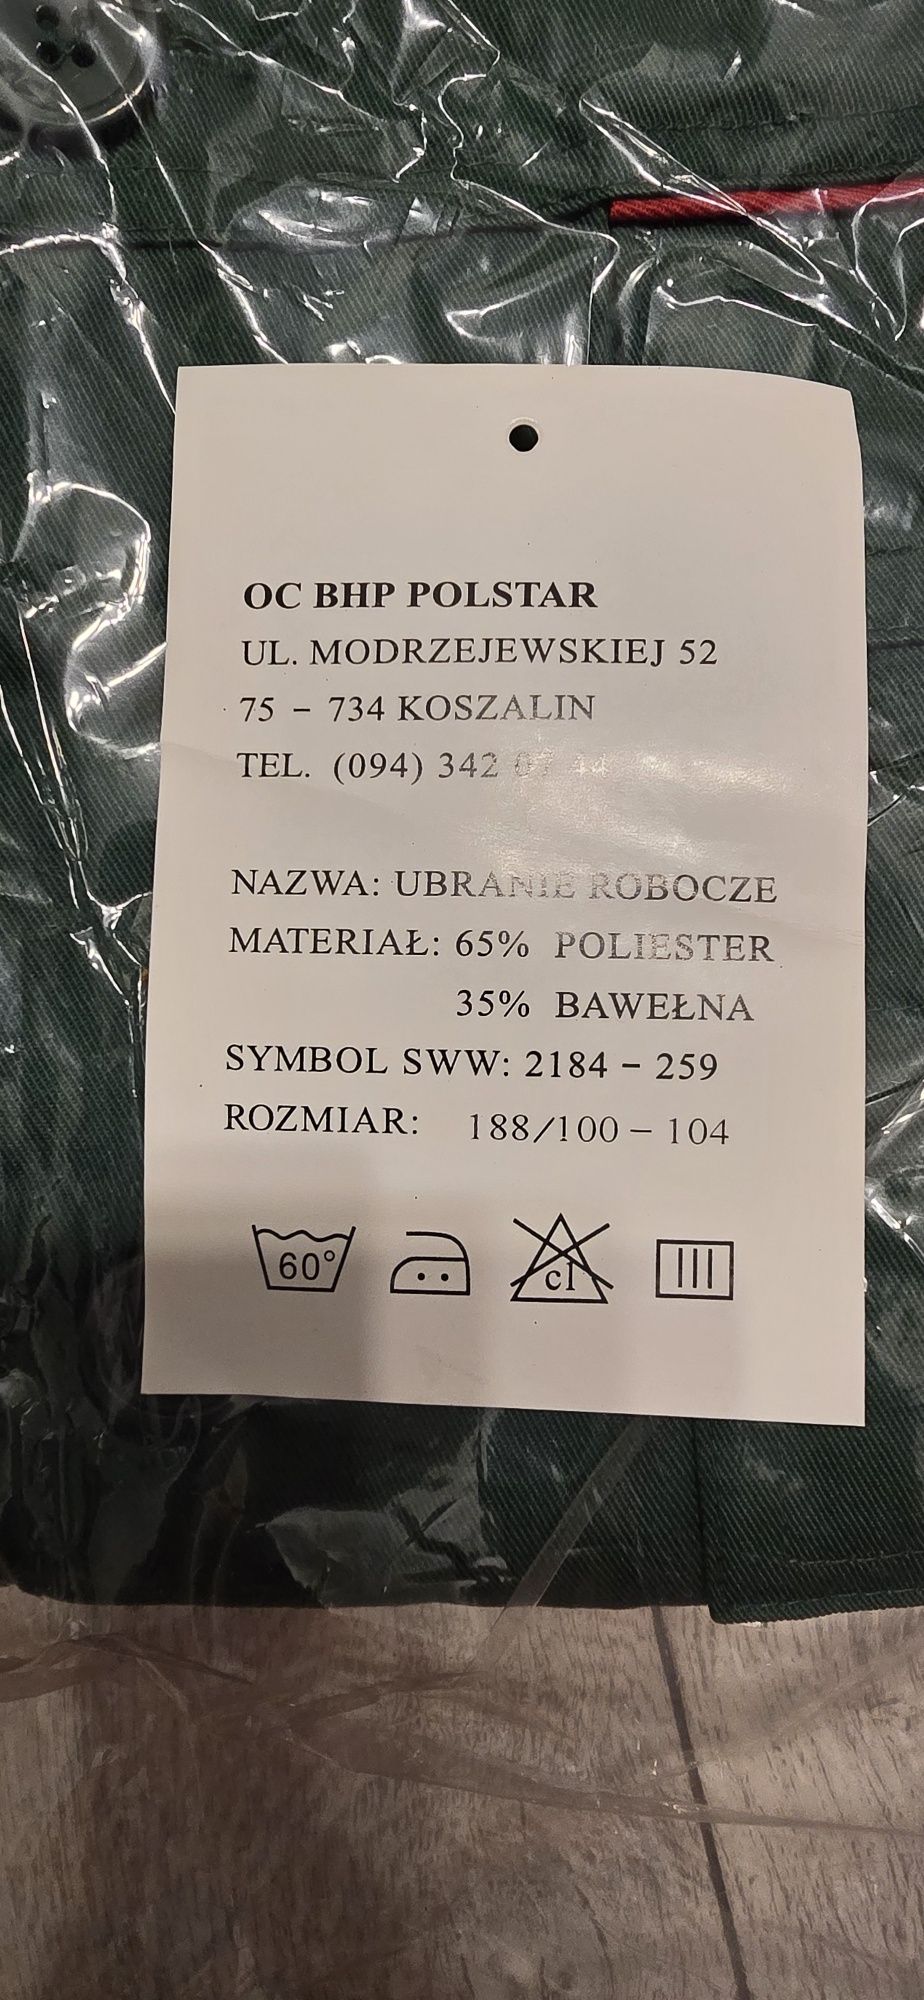 Bluza robocza męska BHP MAX-POPULAR Polstar rozm. 188/100-104